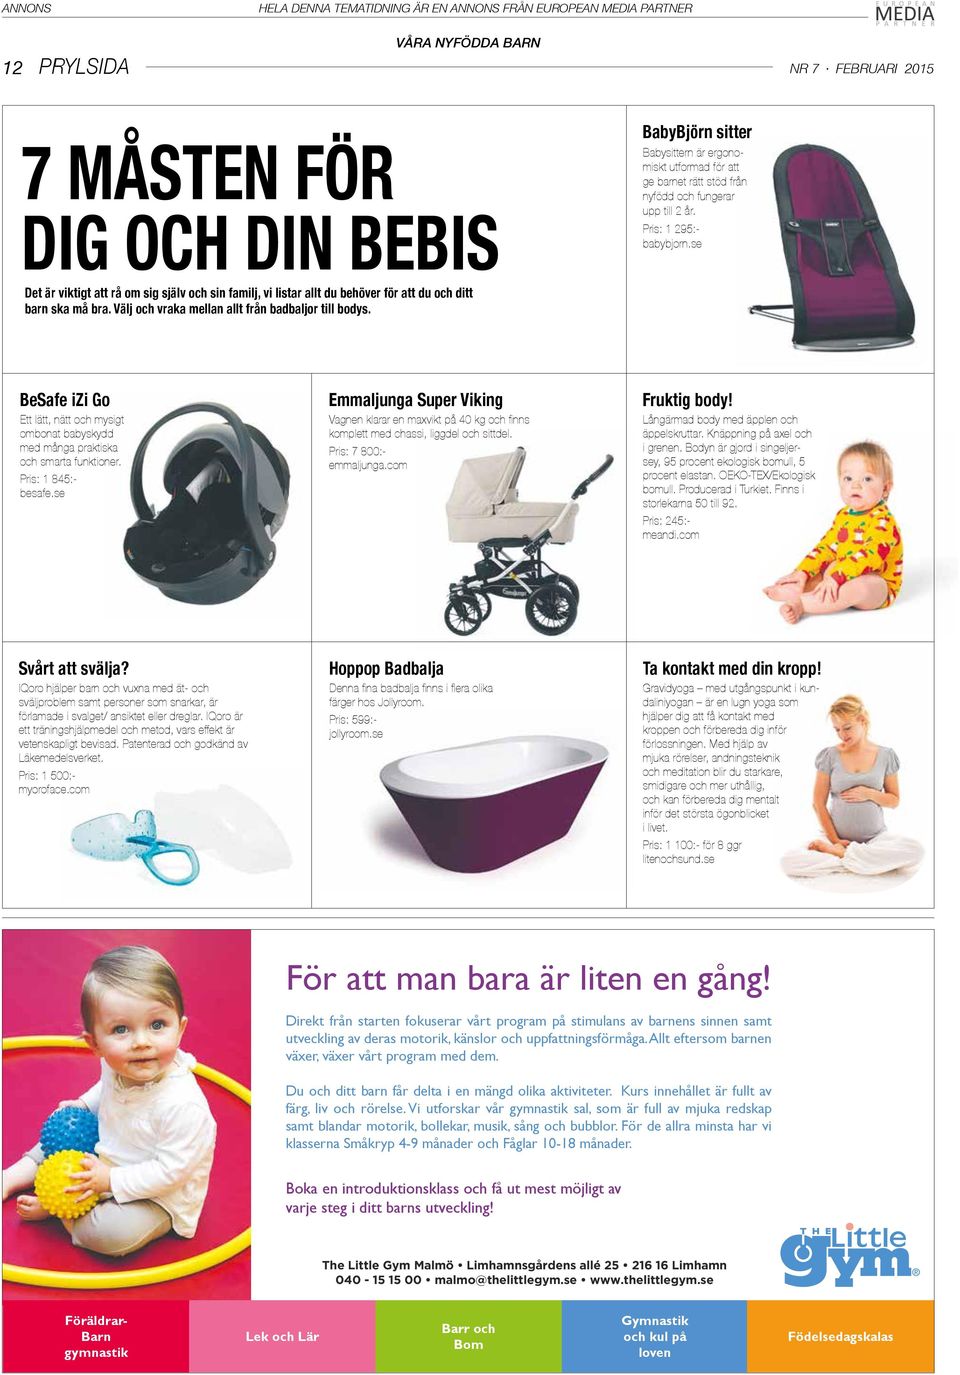 BeSafe izi Go Ett lätt, nätt och mysigt ombonat babyskydd med många praktiska och smarta funktioner. Pris: 1 845:- besafe.